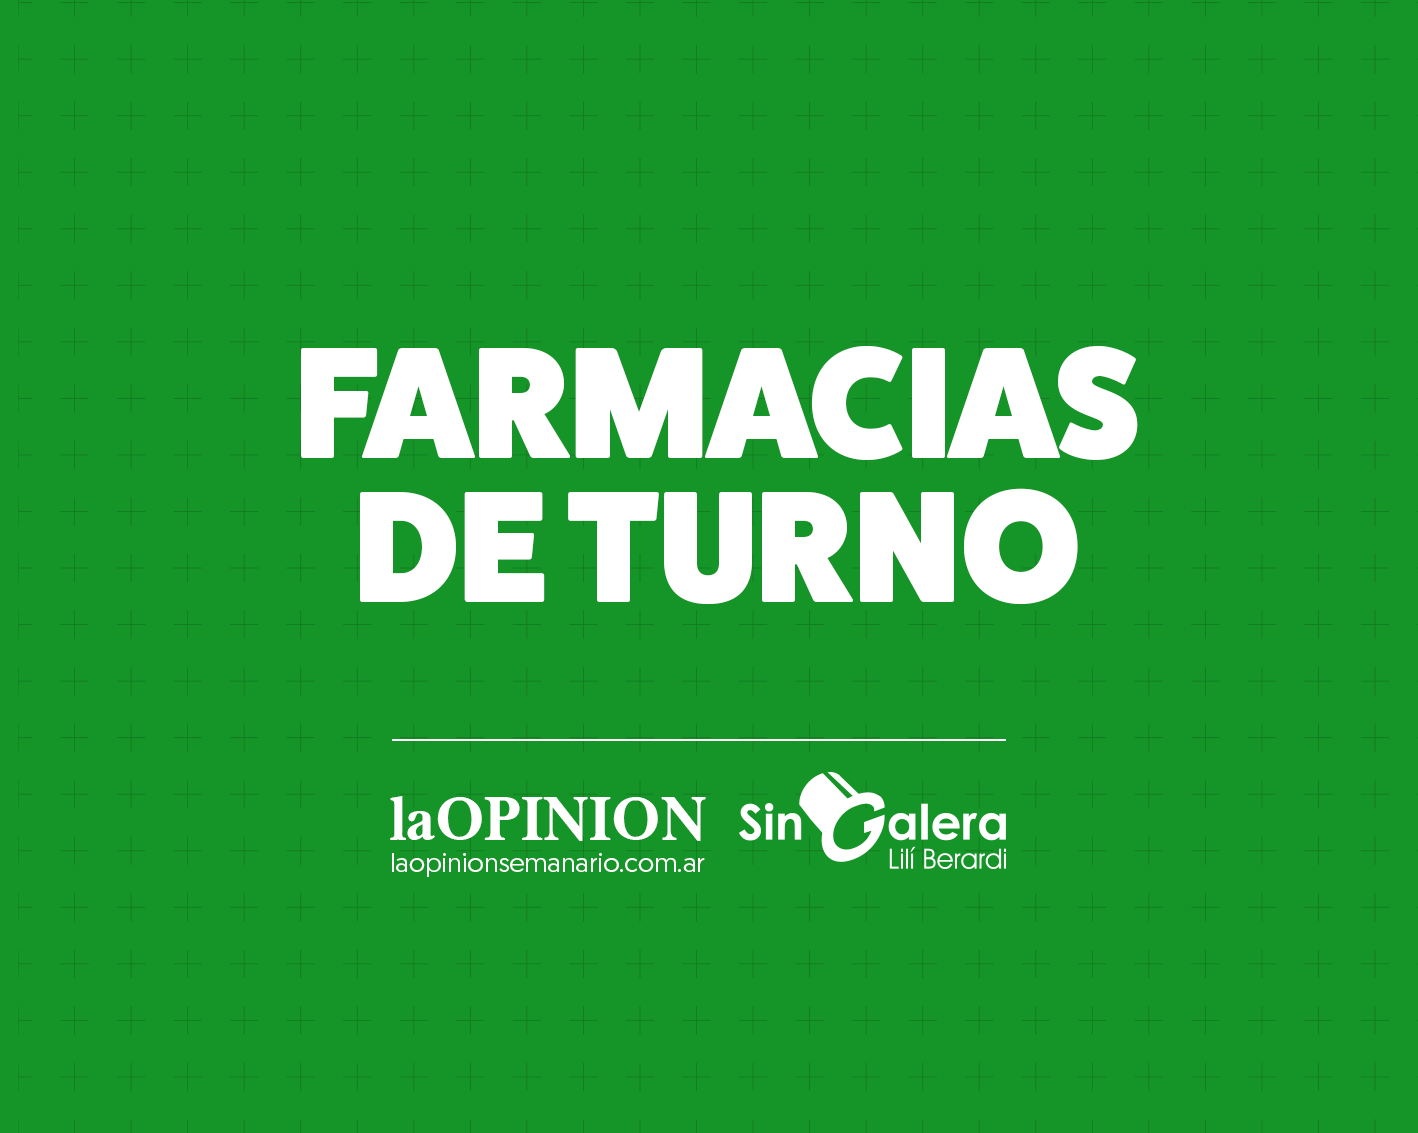 Farmacias de turno 10/2: Taurizano, Rosa y Coliva